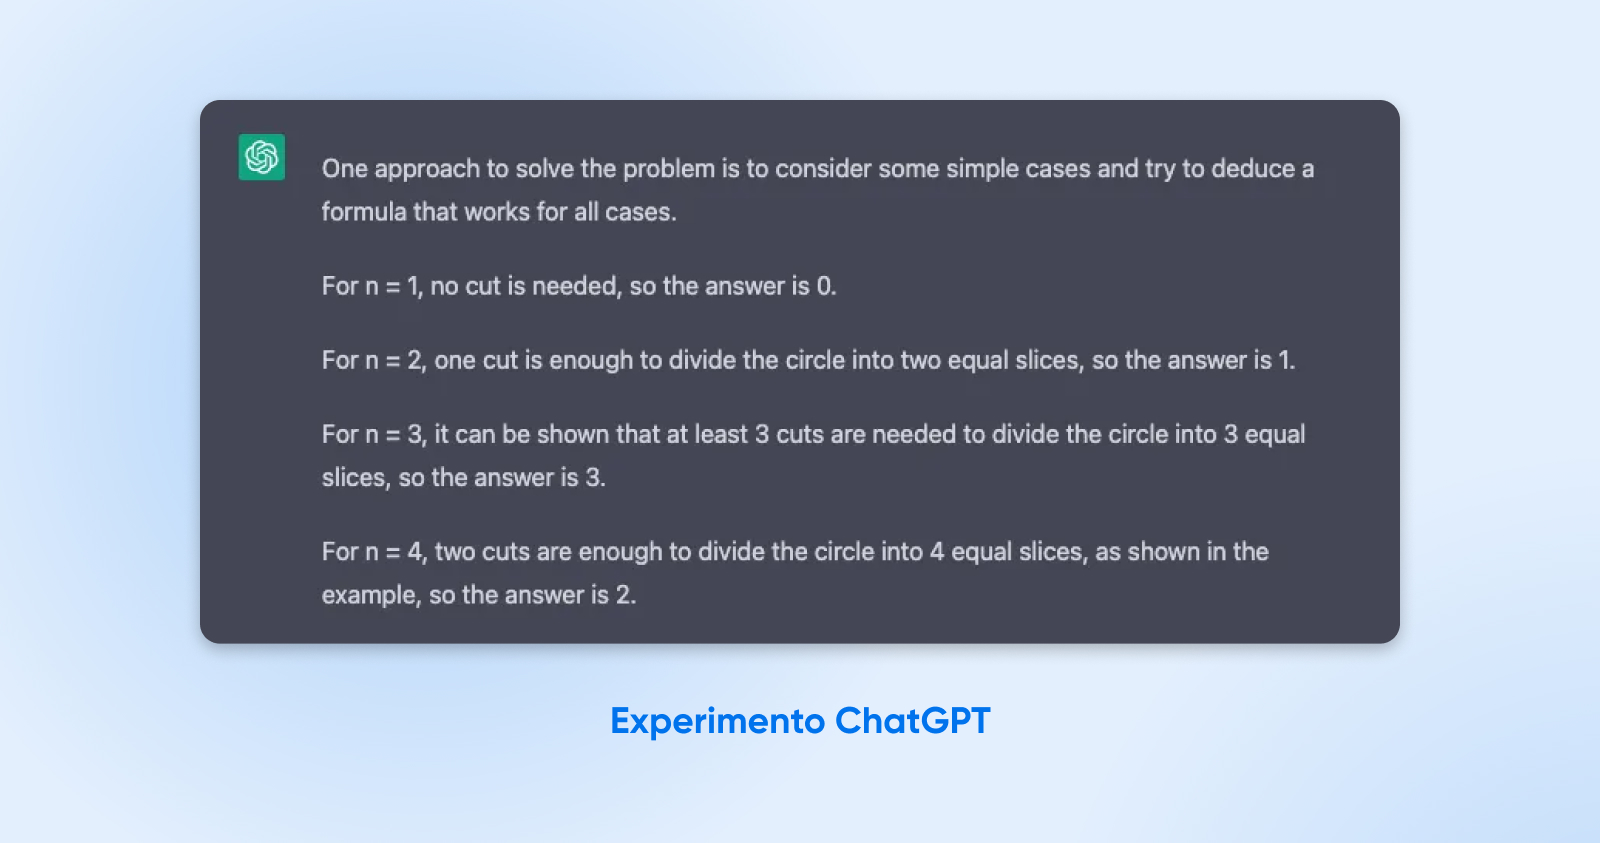 Experimento matemático con CHATGPT